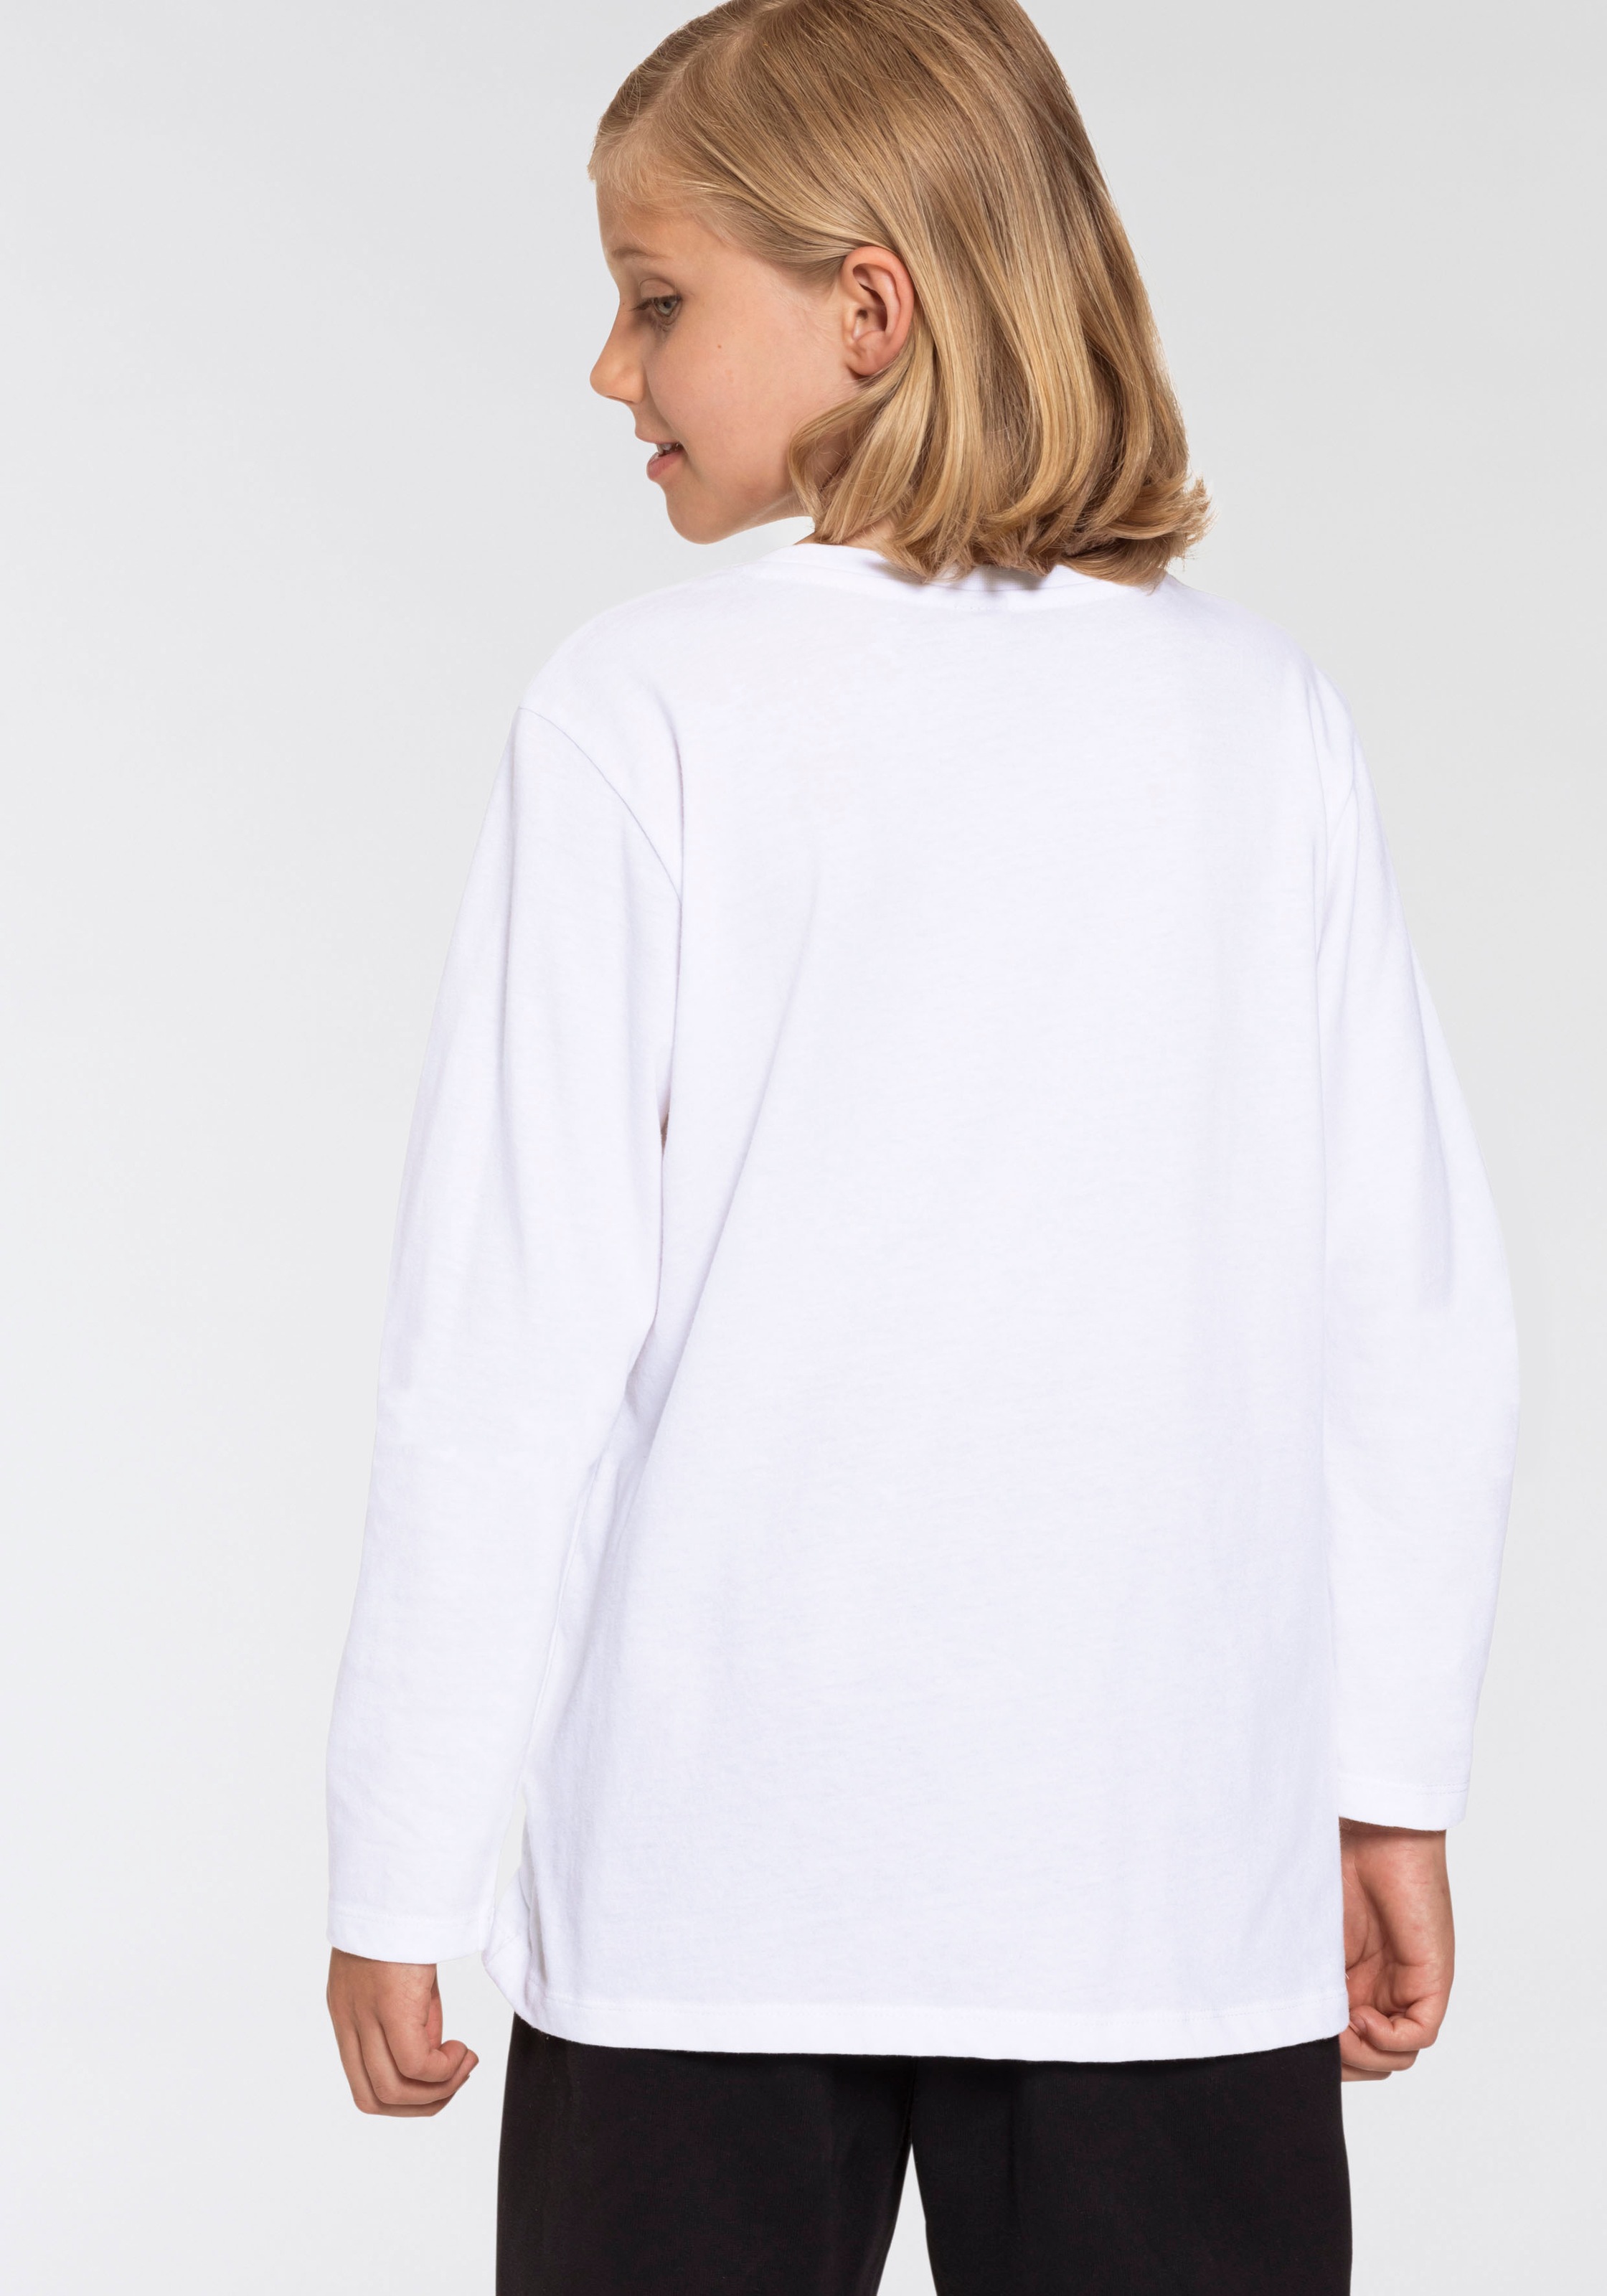 Bench. Langarmshirt »Basic«, mit Druck in Kontrastfarbe im Online-Shop  bestellen